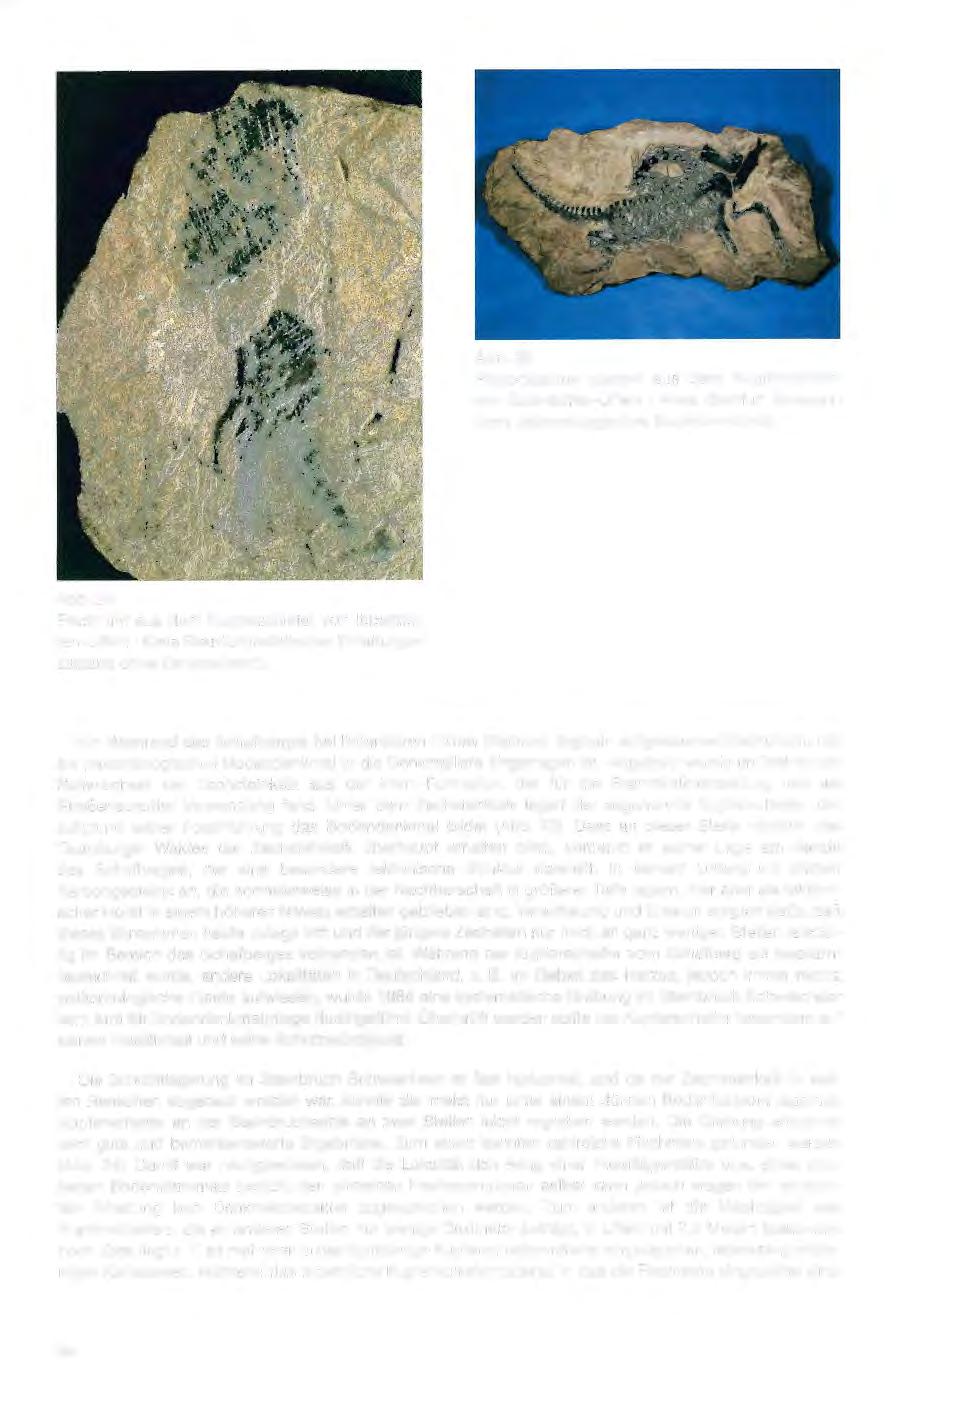 Abb. 25 Protorosaurus speneri aus dem Kupferschiefer von lbbenbüren-uffeln / Kreis Steinfurt (bewegliches paläontologisches Bodendenkmal). Abb.